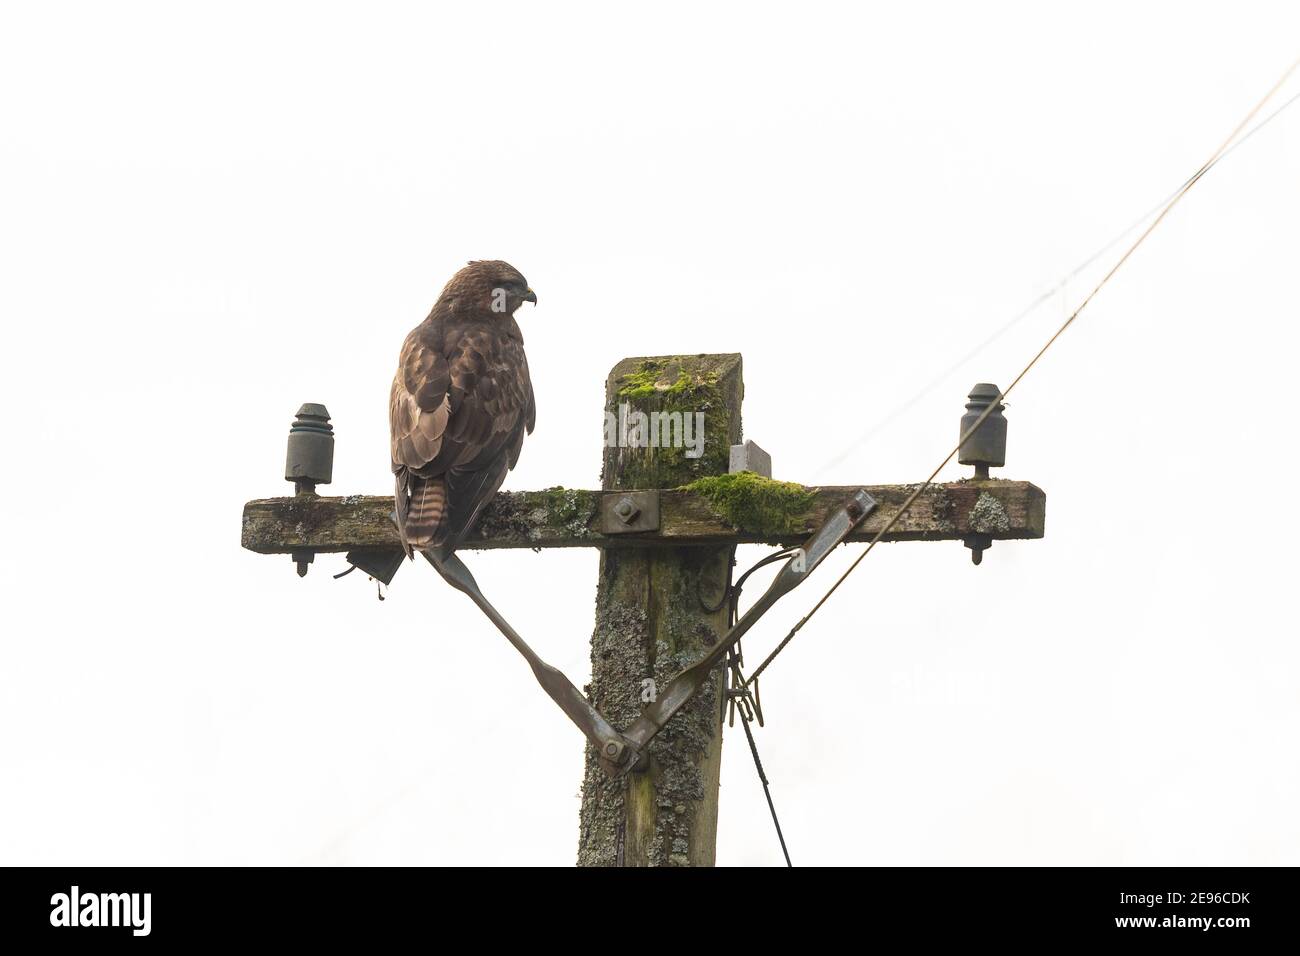 Common Buzzard (buteo buteo) perched on telegraph pole - Scotland, UK Stock Photo